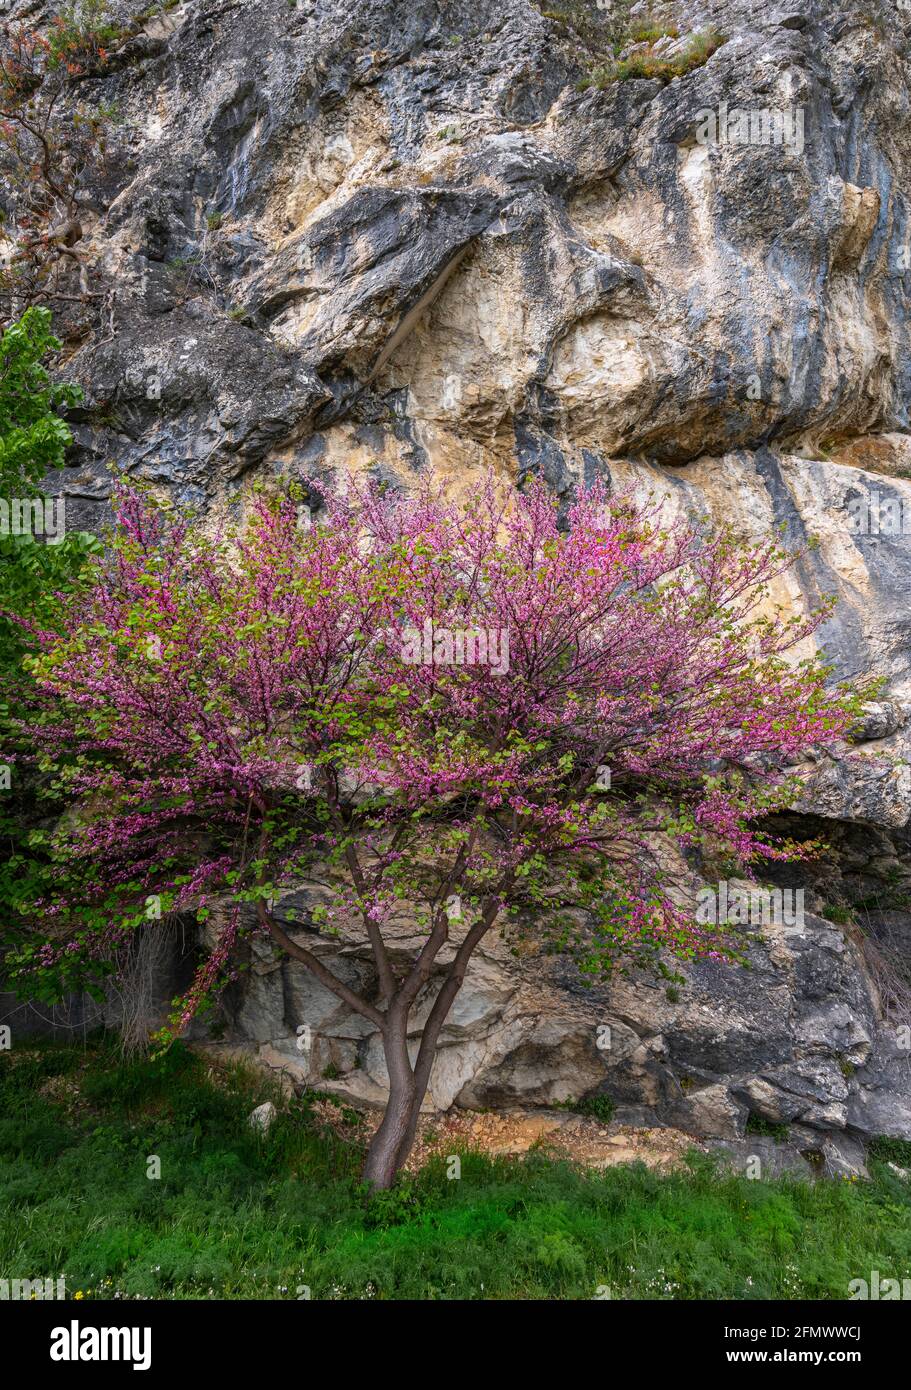 Un arbre de Judas, Cerdis siliquastrum, s'épanouit au pied d'un mur de roche. Abruzzes, Italie, europe Banque D'Images